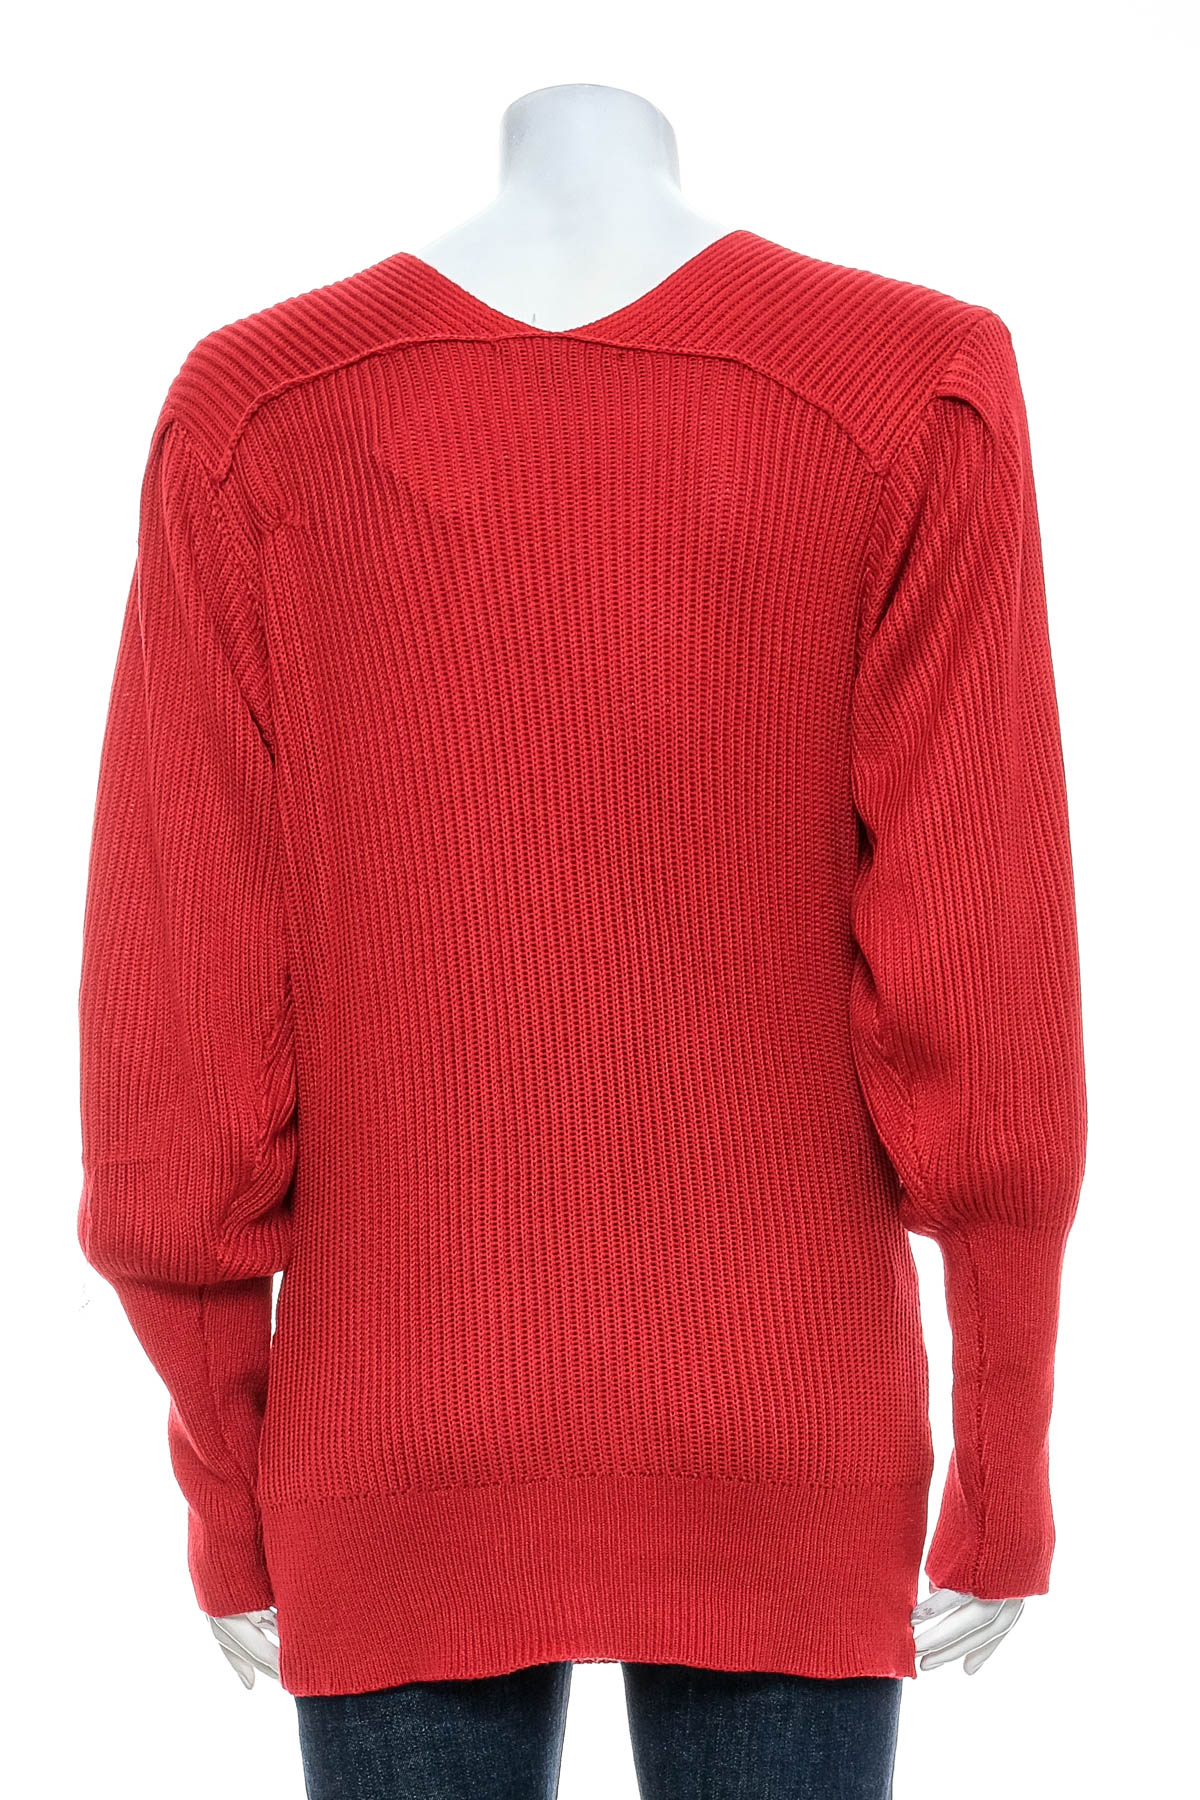 Women's sweater - BOSTON PROPER - 1